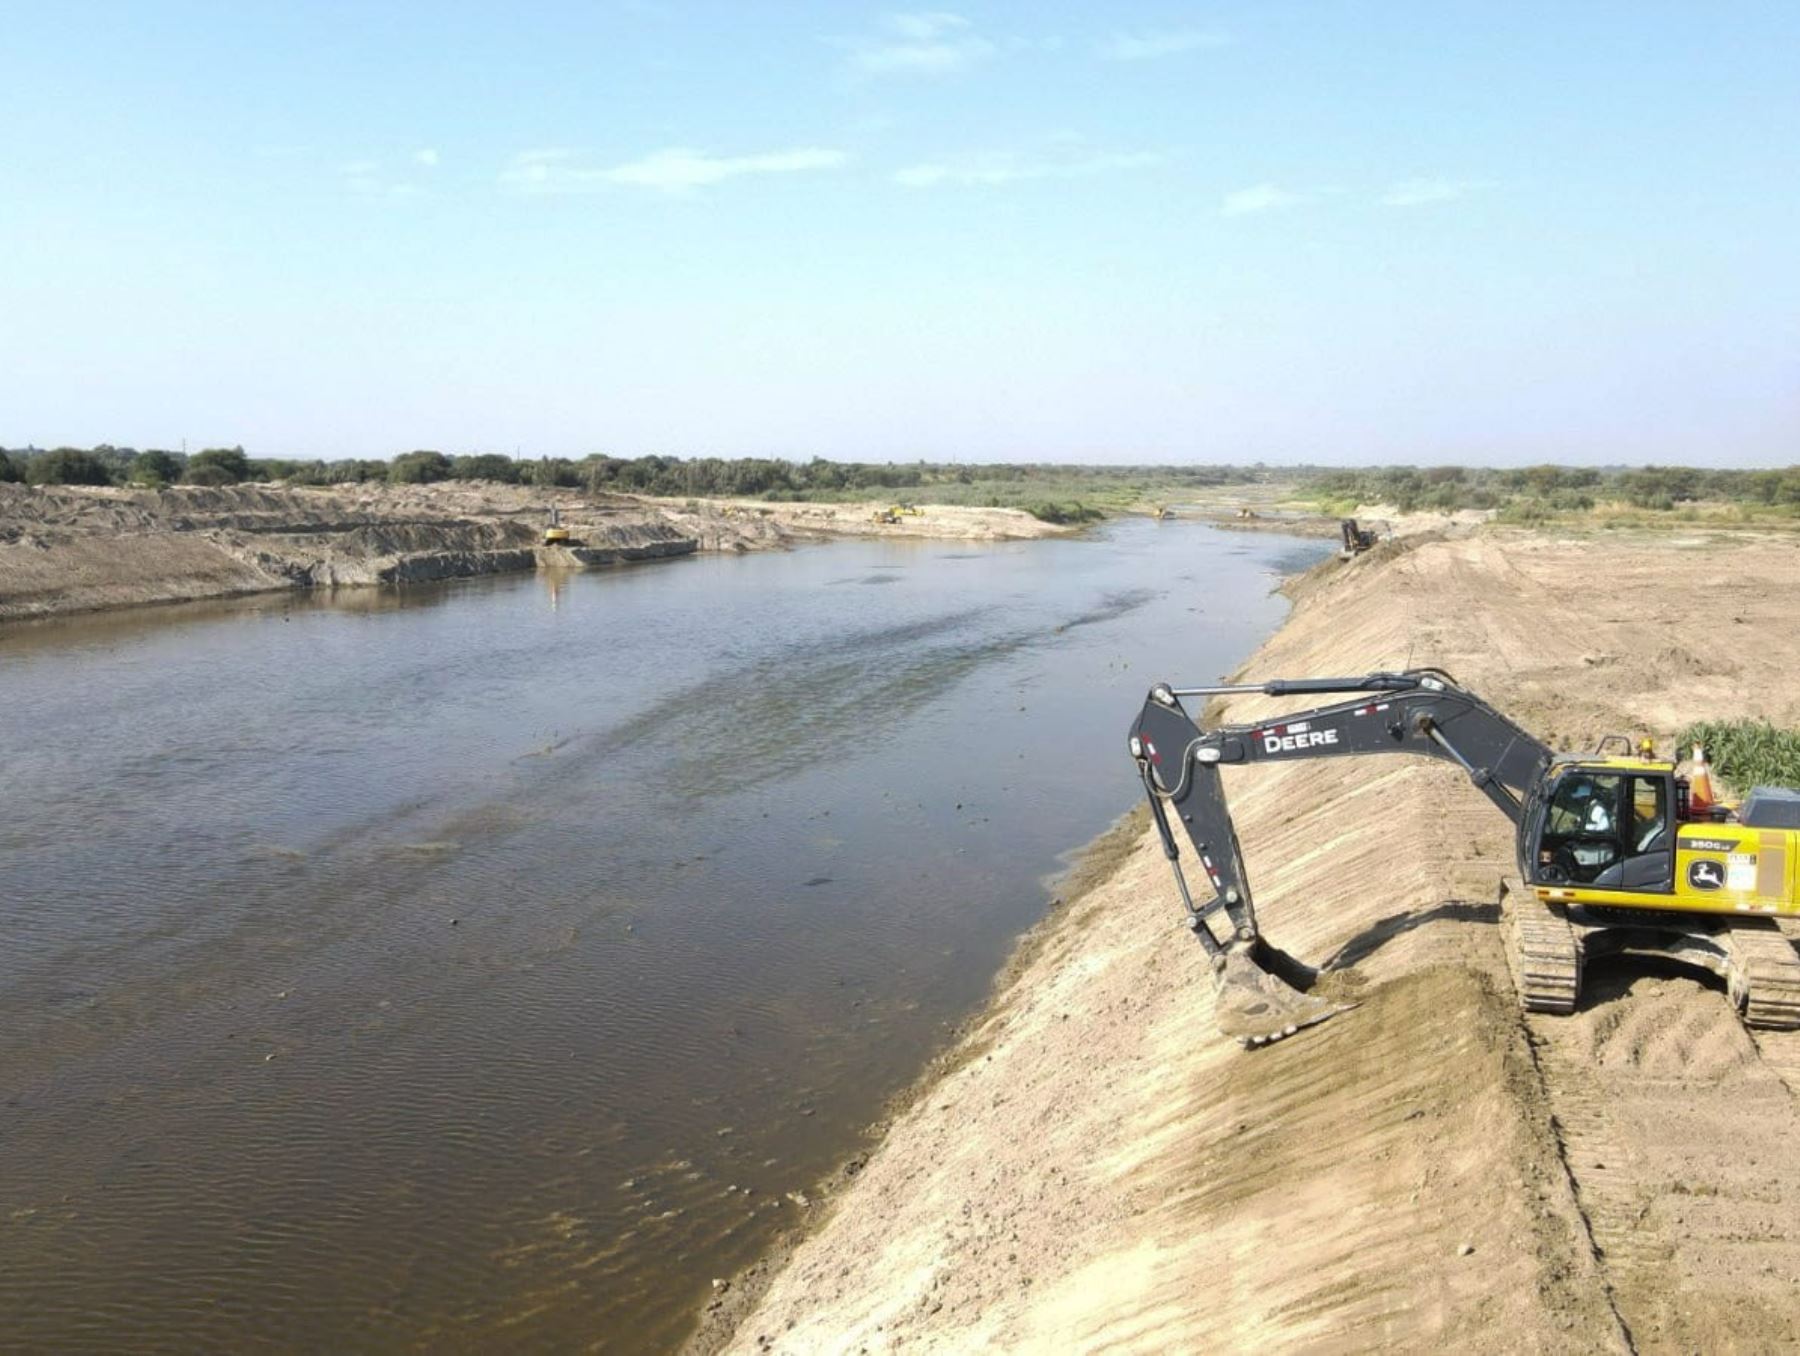 Continúan los trabajos de descolmatación y limpieza del río Piura, región Piura, como medida de previsión ante posibles lluvias intensas causadas por el Fenómeno El Niño. ANDINA/Difusión